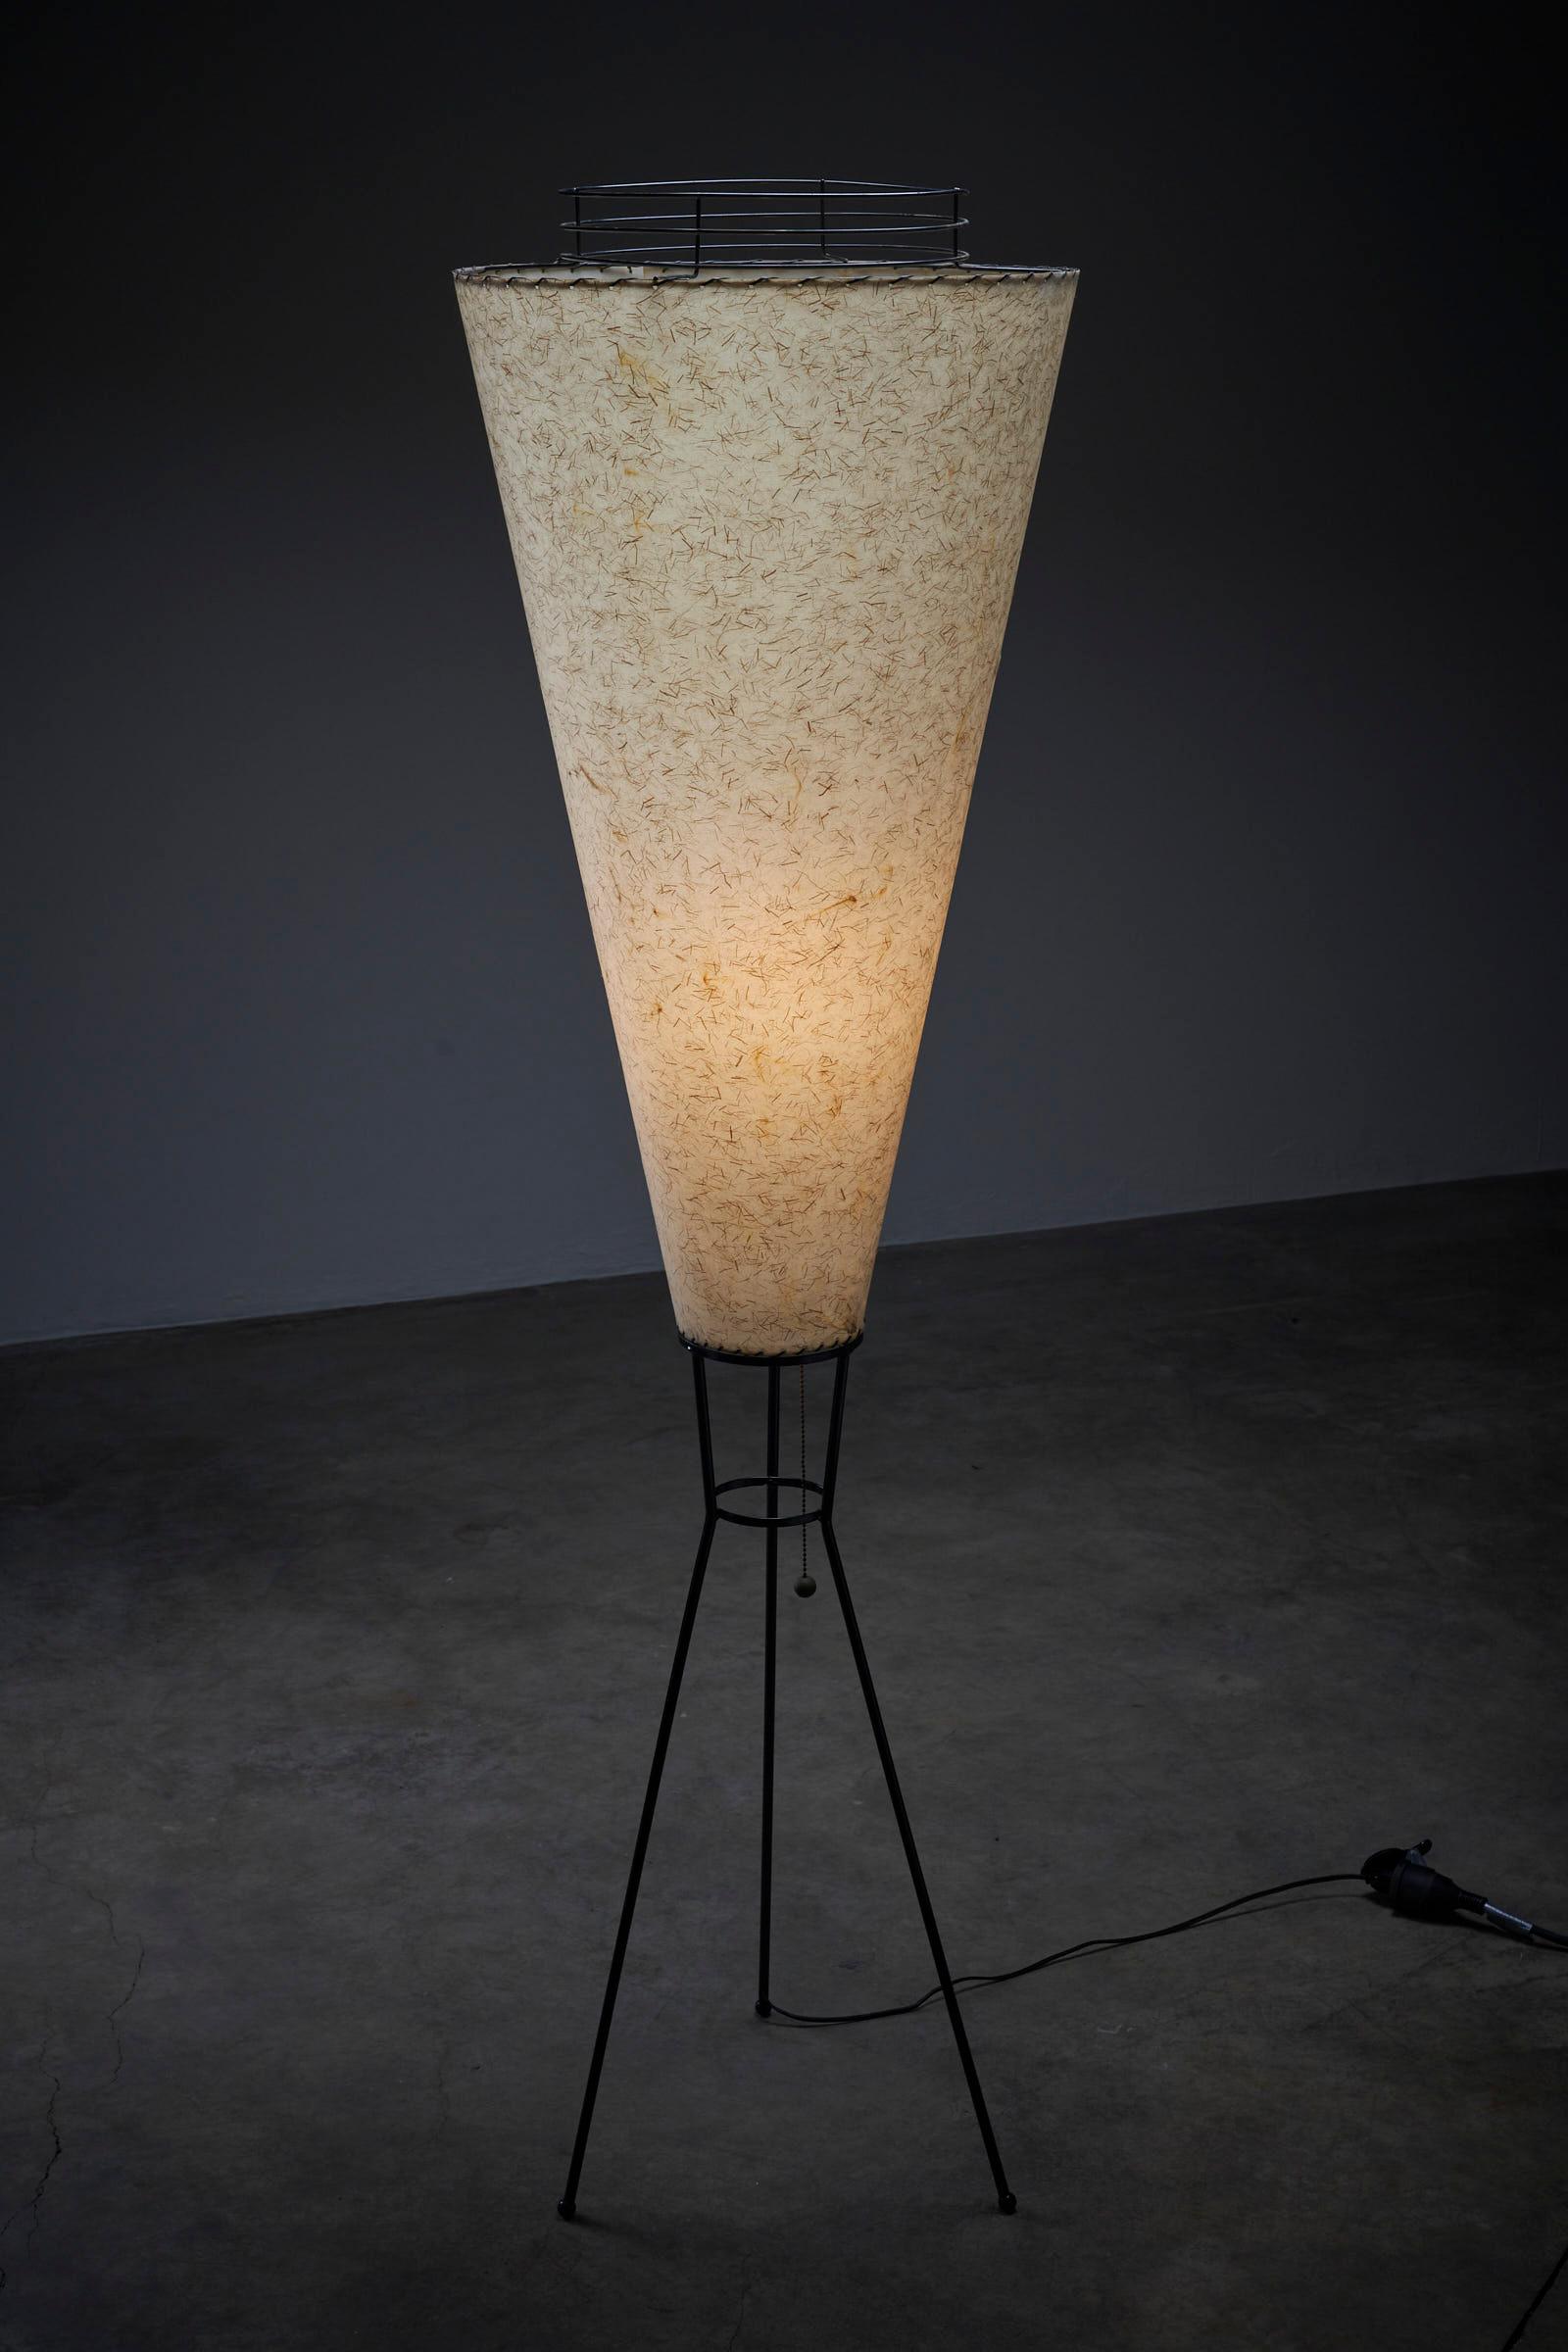 Voici l'étonnant lampadaire trépied Large Cone d'Archaic Smile Inc. Ce lampadaire combine sans effort un design élégant avec une touche de texture, créant un point focal captivant dans n'importe quel espace intérieur.

La lampe est dotée d'une fine